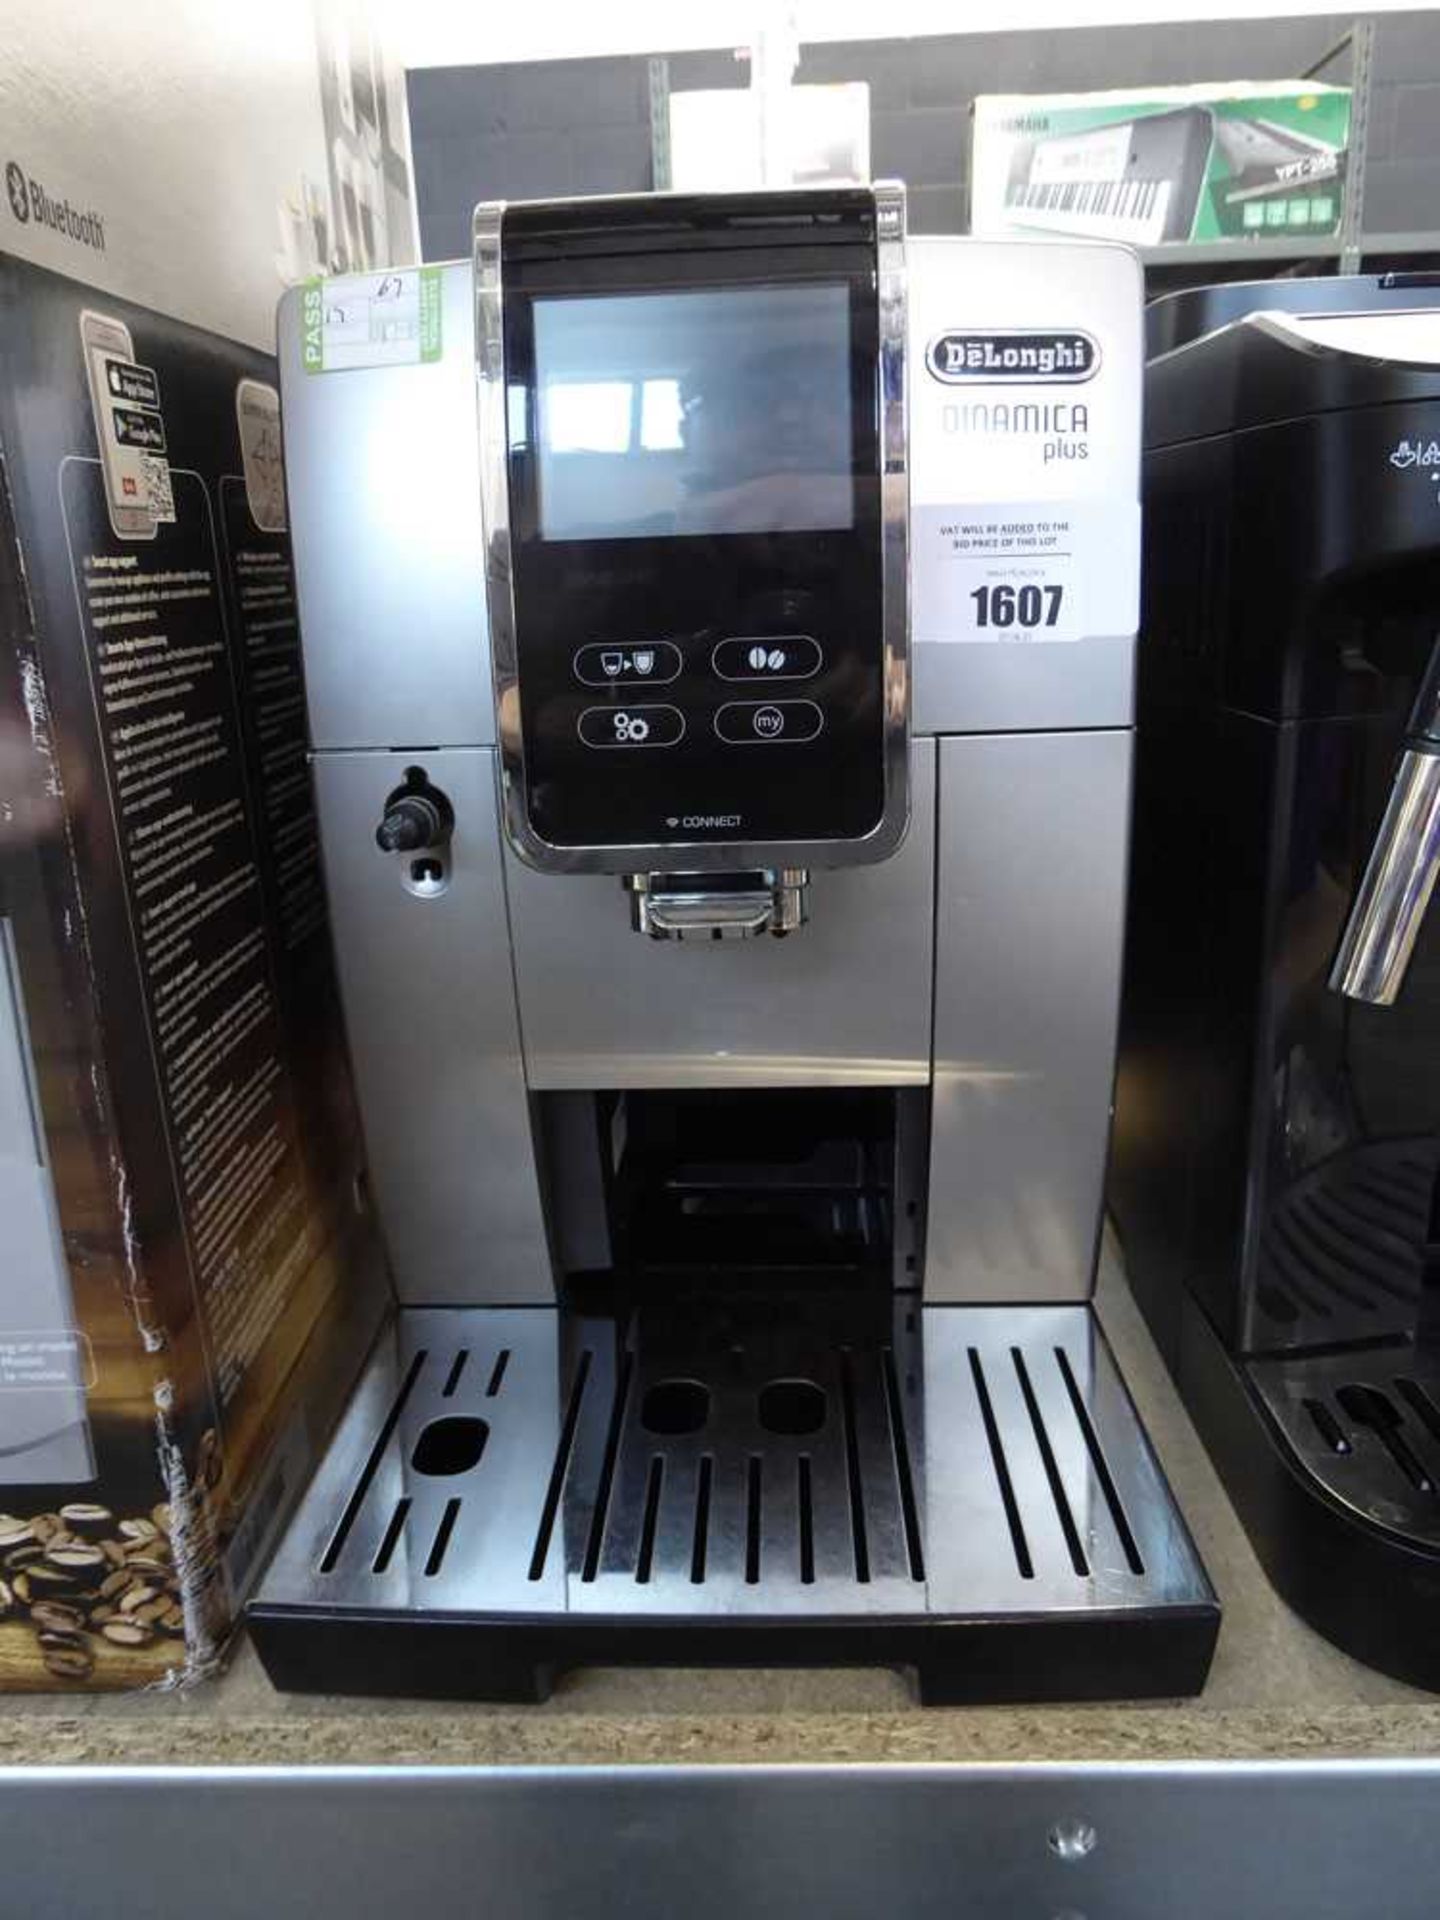 +VAT De'Longhi Dynamica Plus coffee machine, unboxed